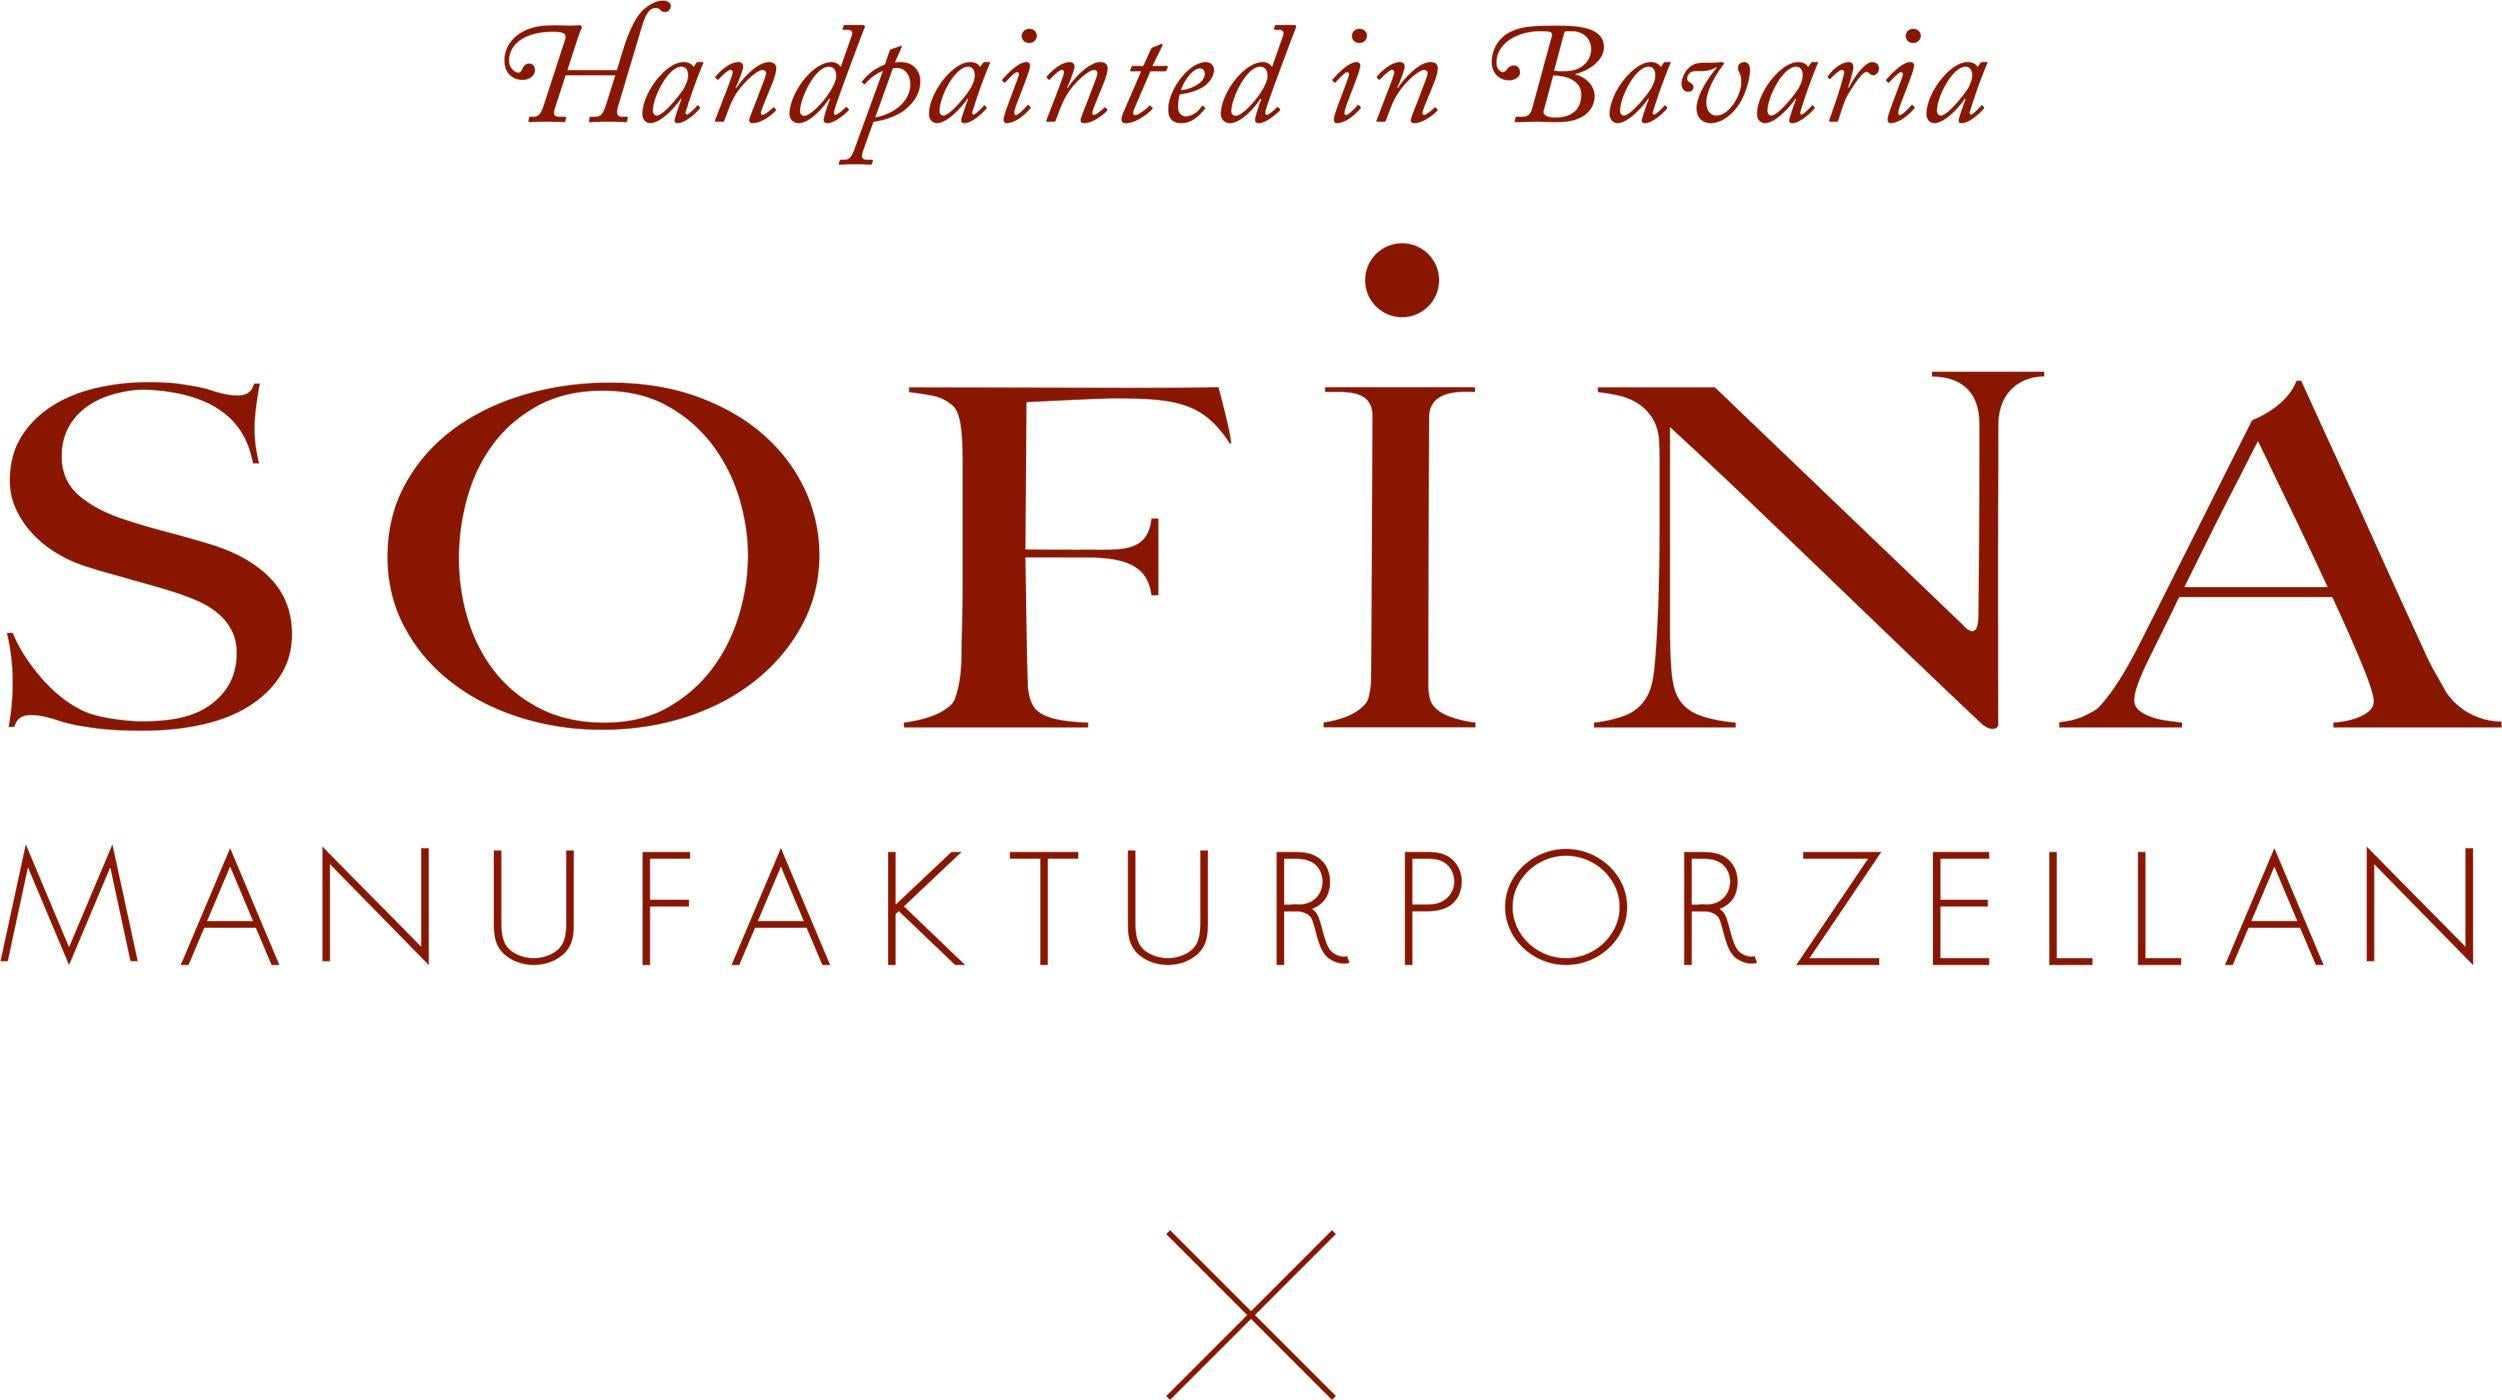 Ce plat en porcelaine peinte, entièrement fait à la main, est fabriqué par Sofina porcelain en Bavière. Peint à la main avec un grand scarabée et d'autres coléoptères. Bordé d'un cadre en platine. Un centre de table parfait pour les bisquits ou les